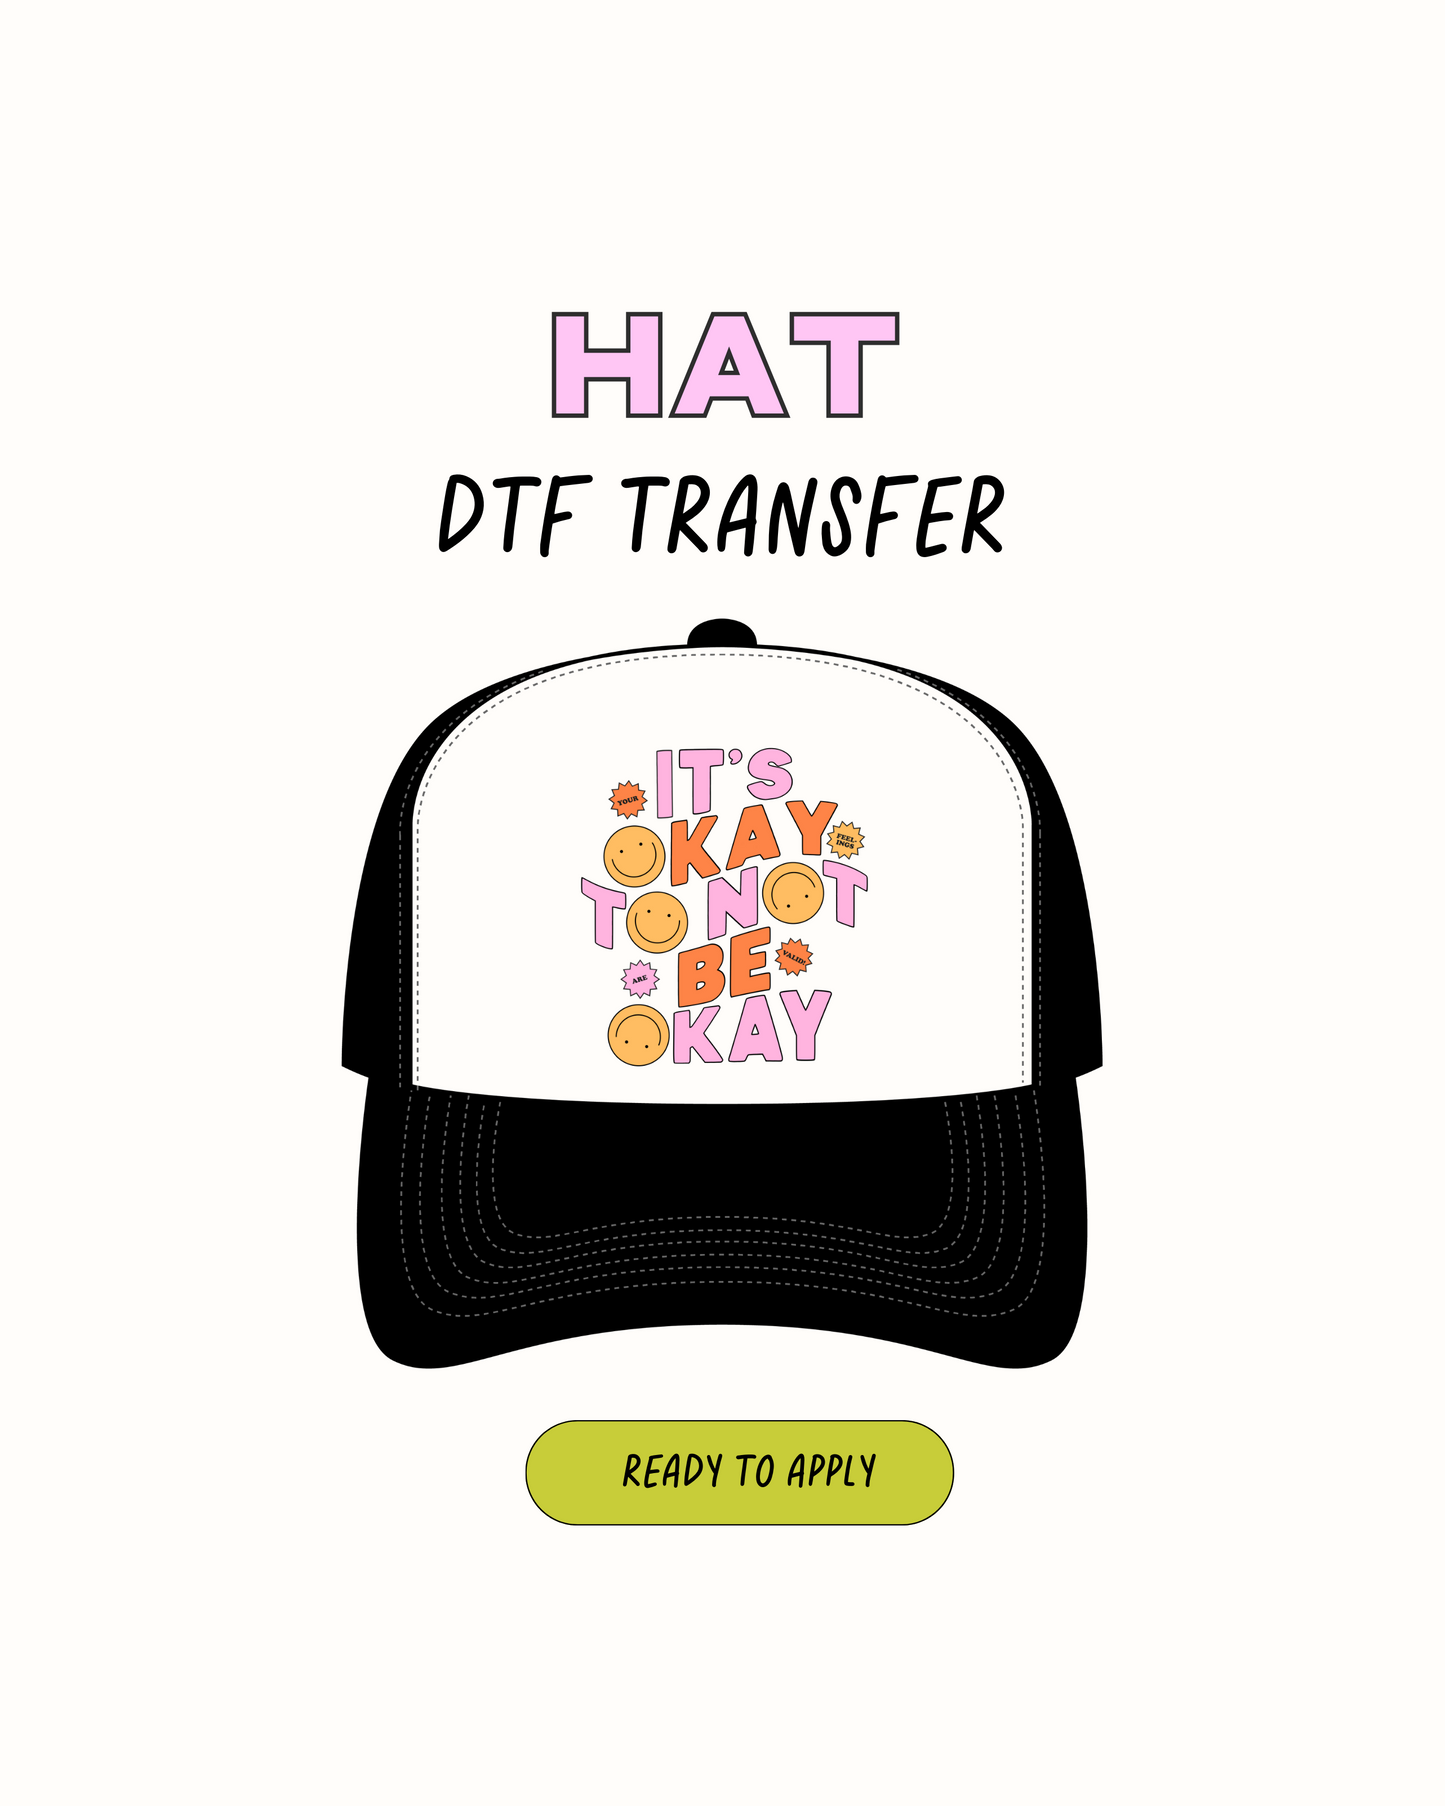 Está bien - Transferencias de sombreros DTF 